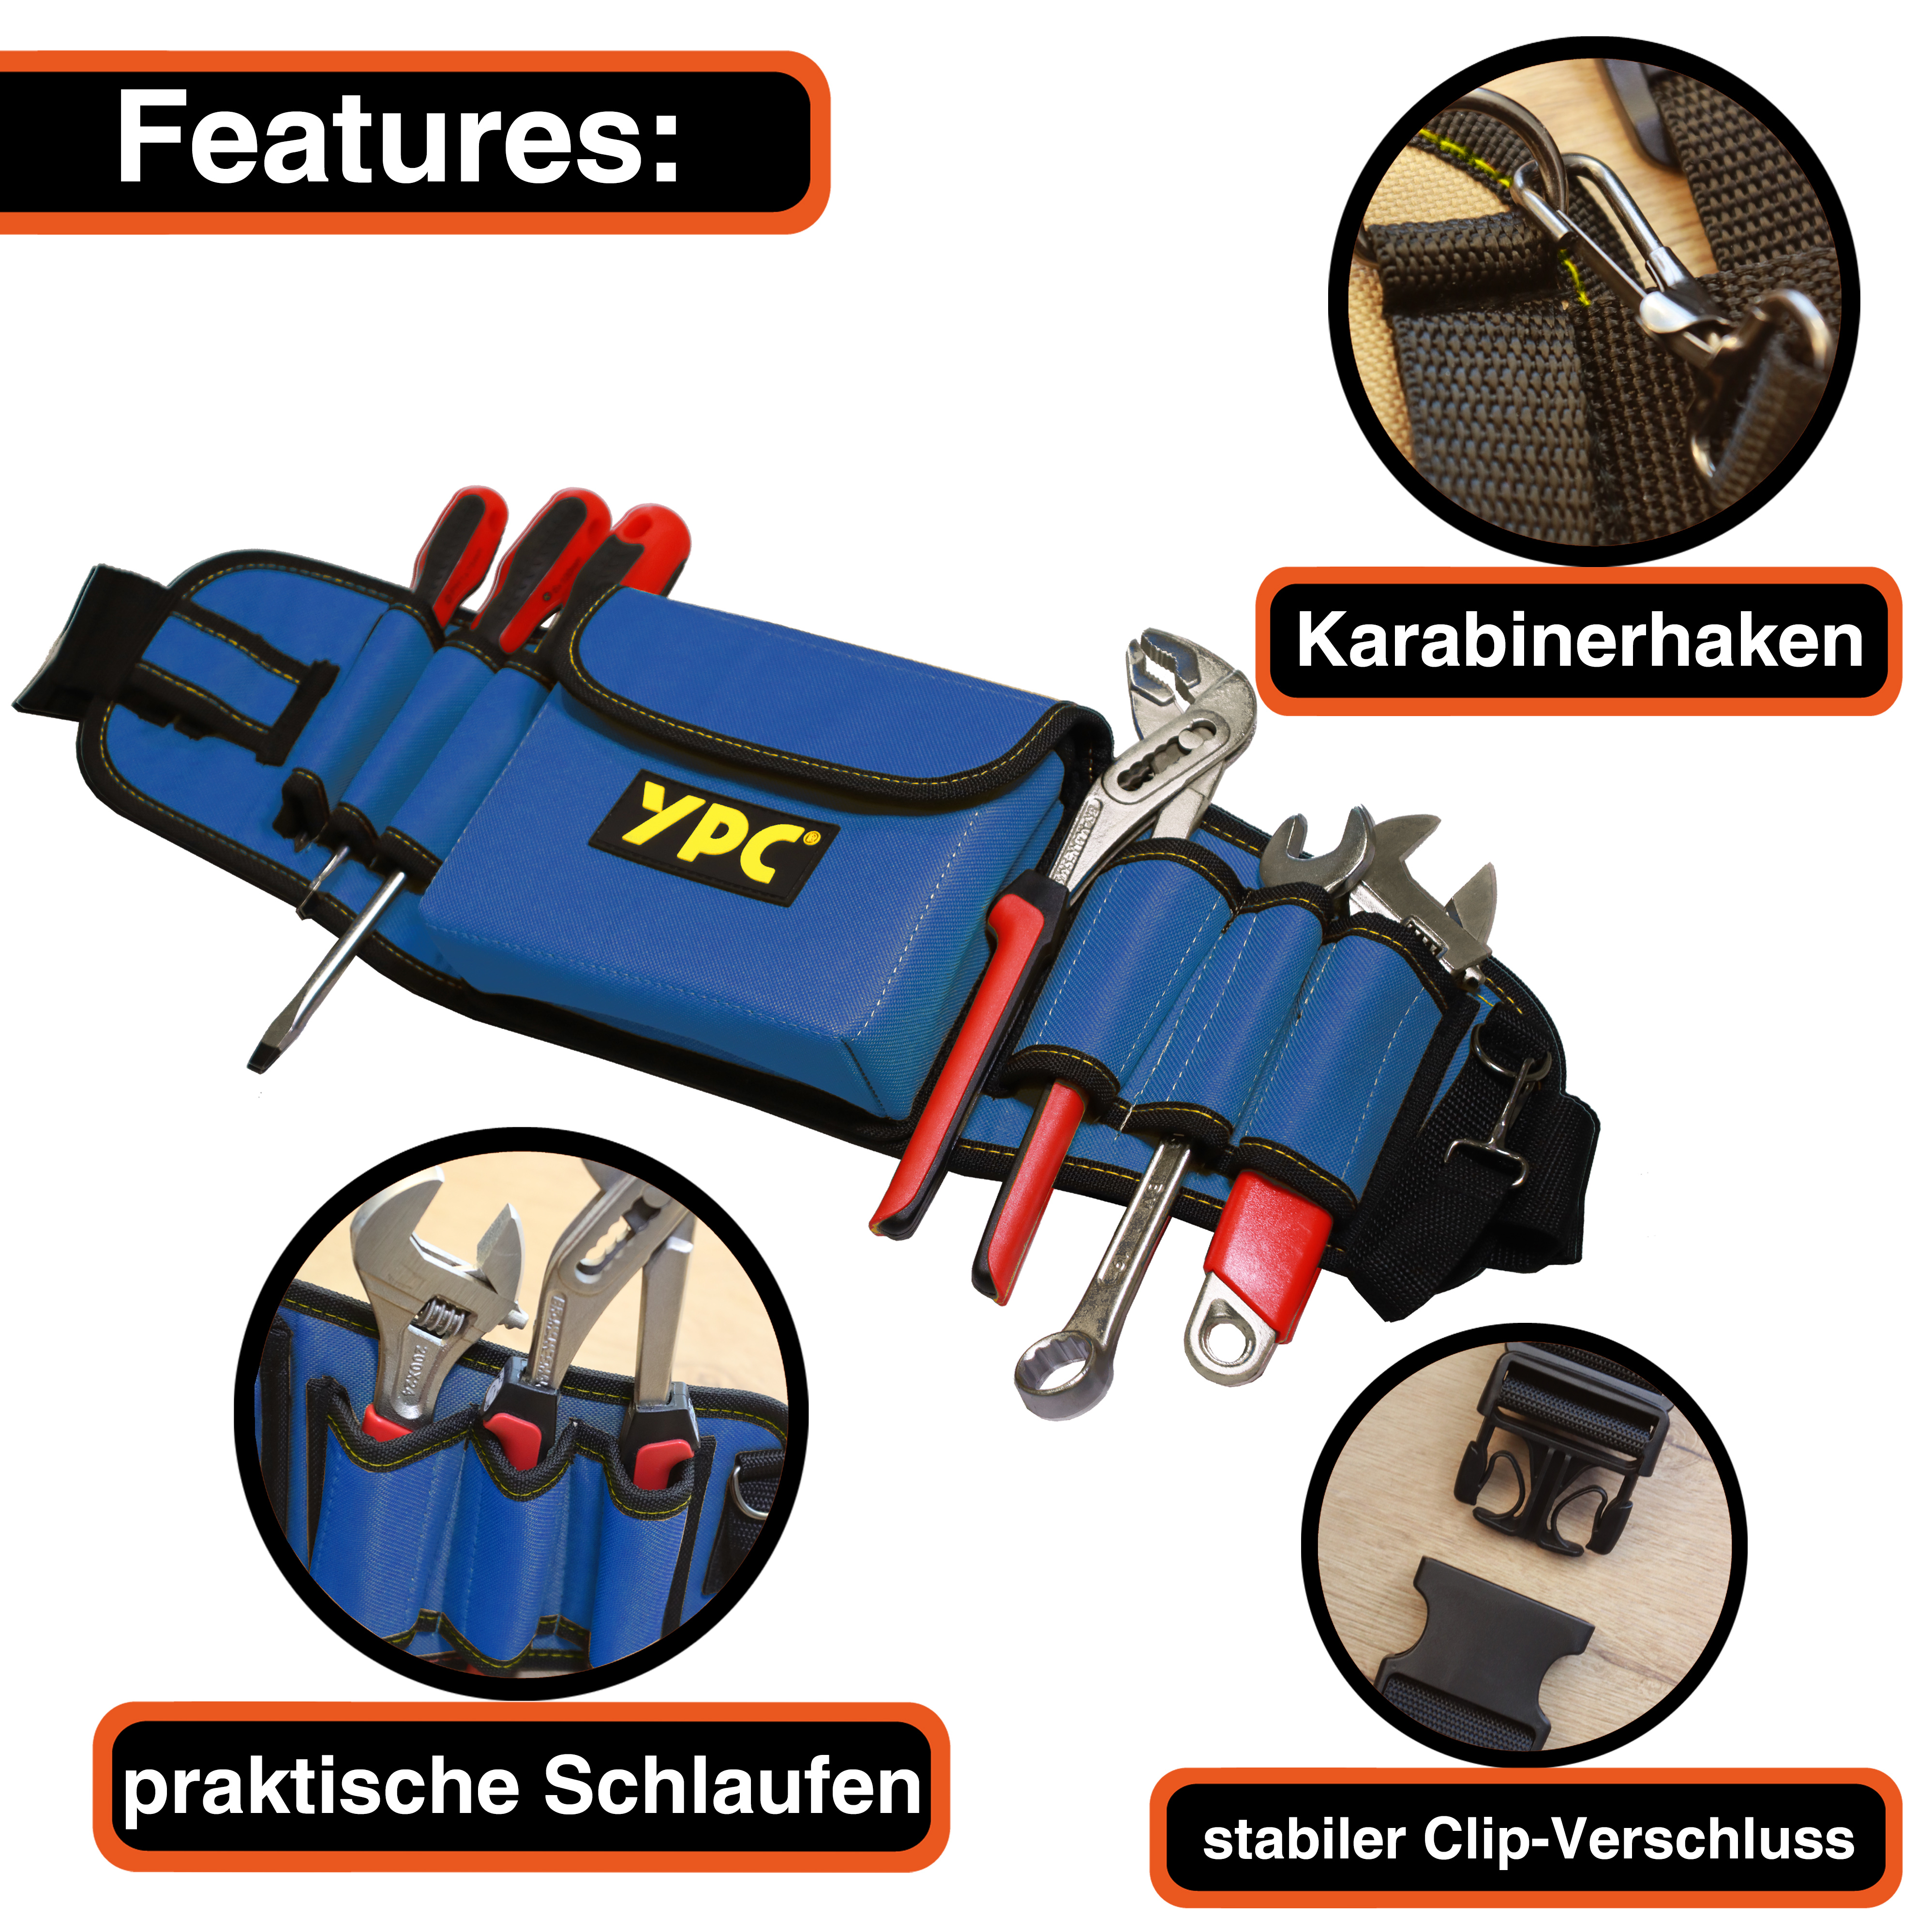 "ProBelt" Werkzeuggürtel 58x16cm, 130cm gesamt, mit Tasche und 8 Halteschlaufen, Blau-Schwarz